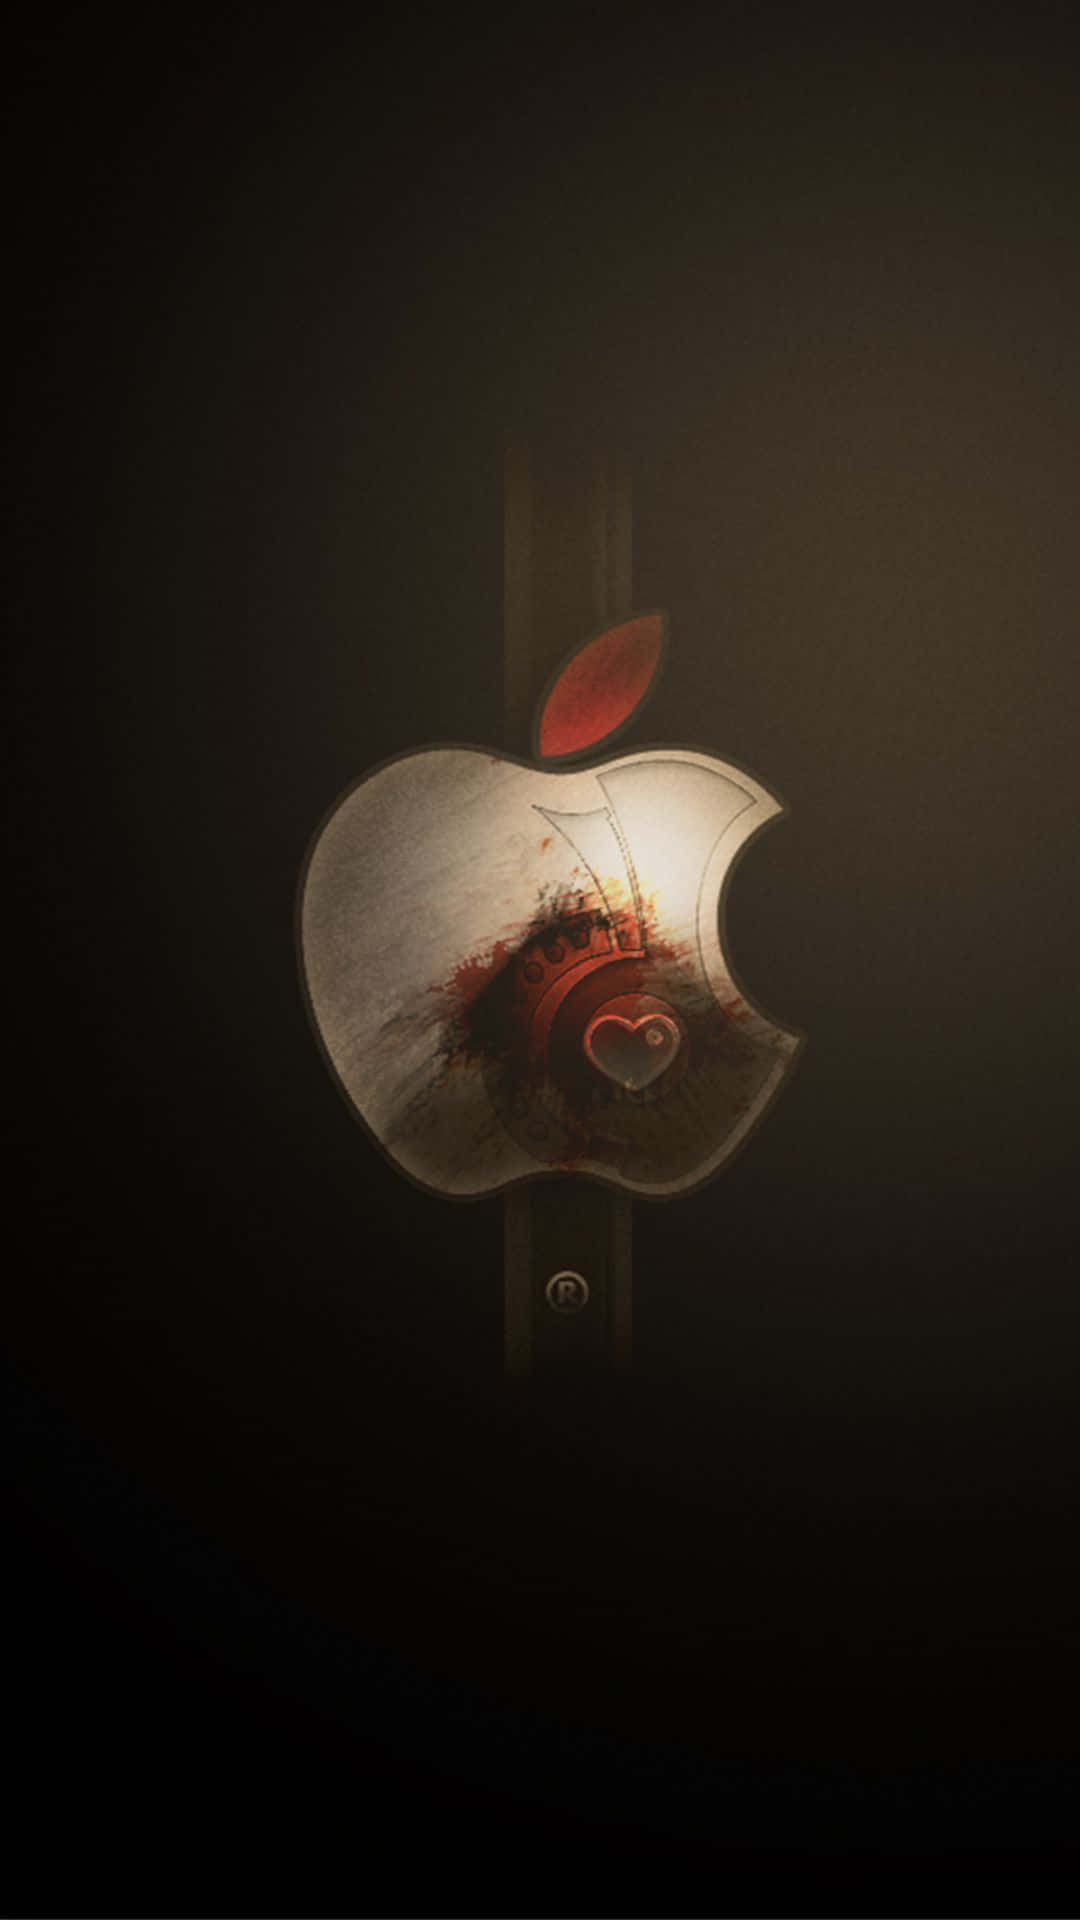 Dasikonische Apple-logo Auf Einem Iphone X Wallpaper